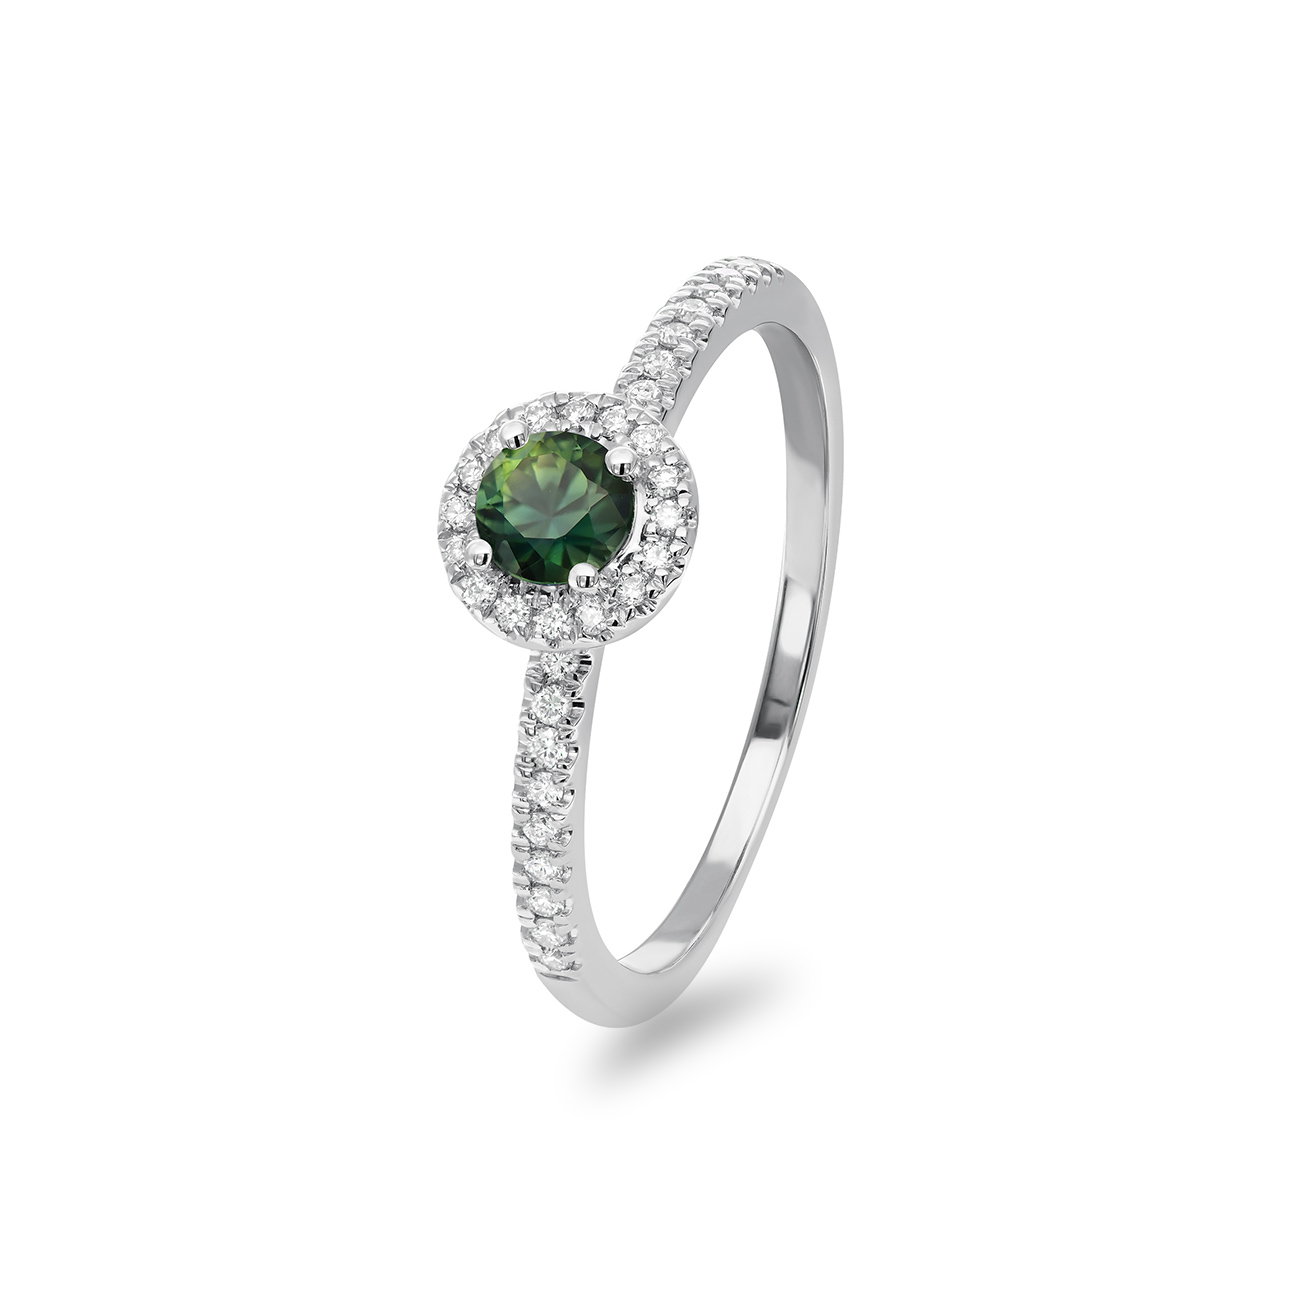 Teal Australian Sapphire & Diamond Clarissa Ring